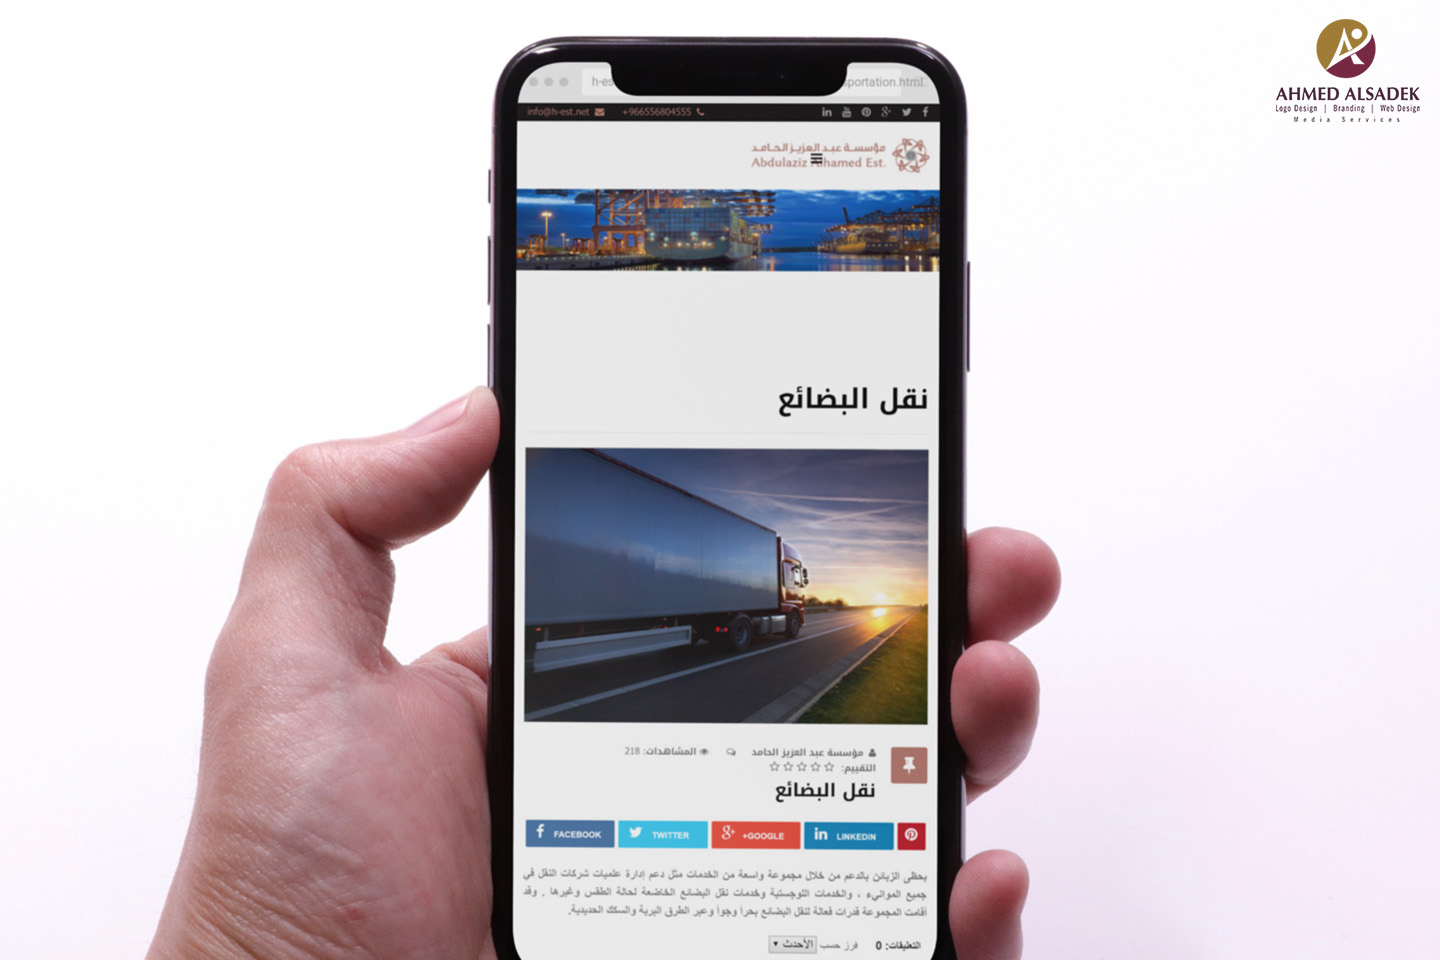 تصميم موقع الكتروني شركة عبد العزيز الحامد للتجارة في المملكة العربية السعودية